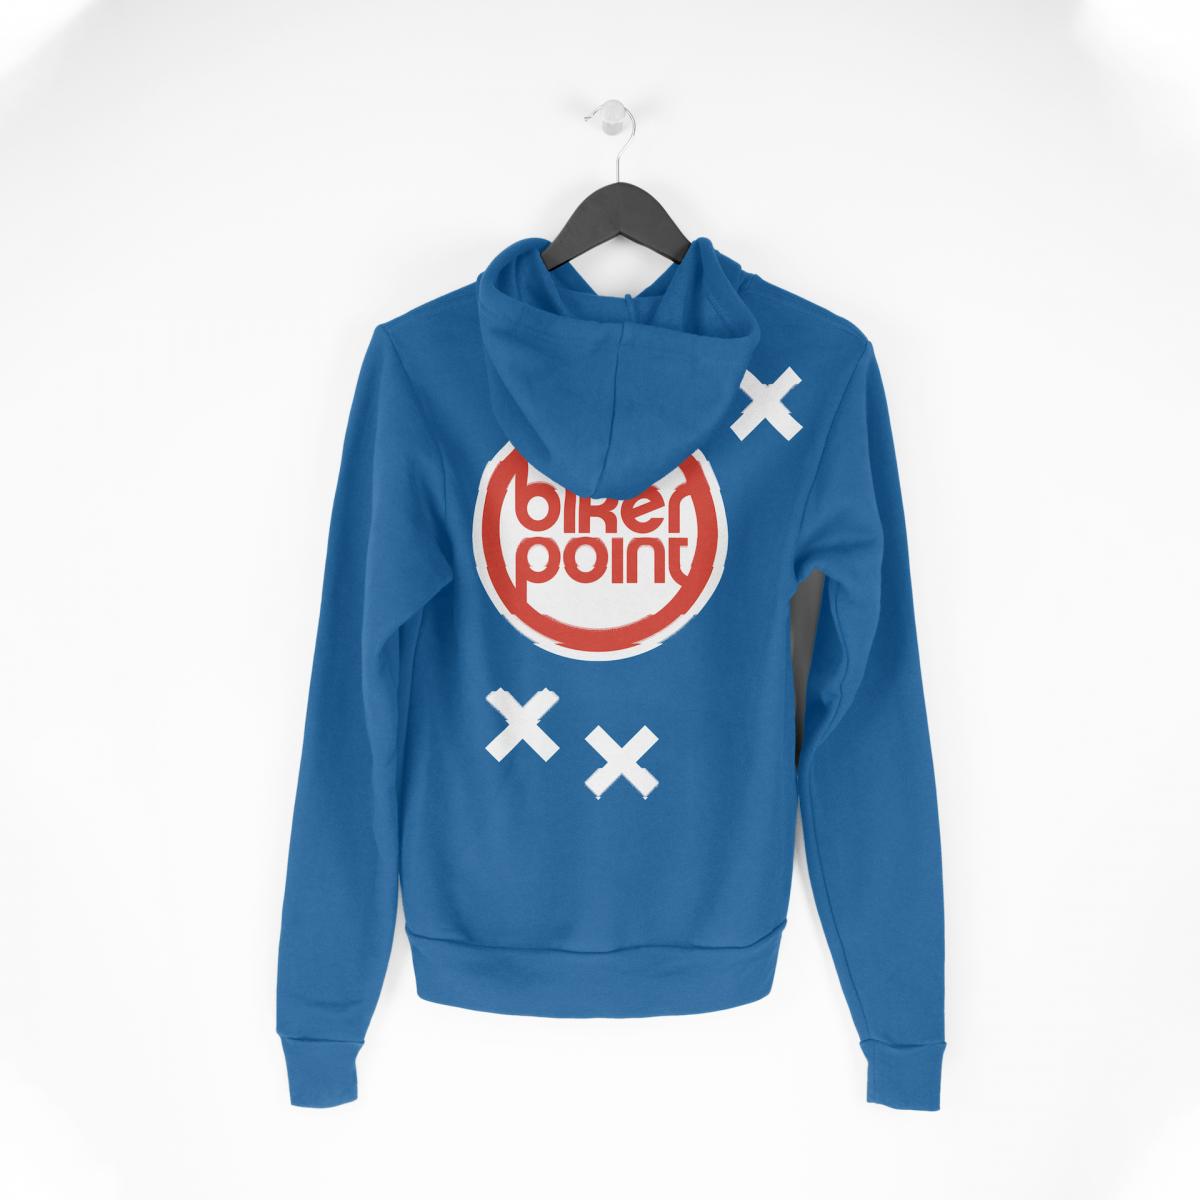 Sweatshirt mit Bikerpoint-Logo und Bikerpoint-Stilelementen